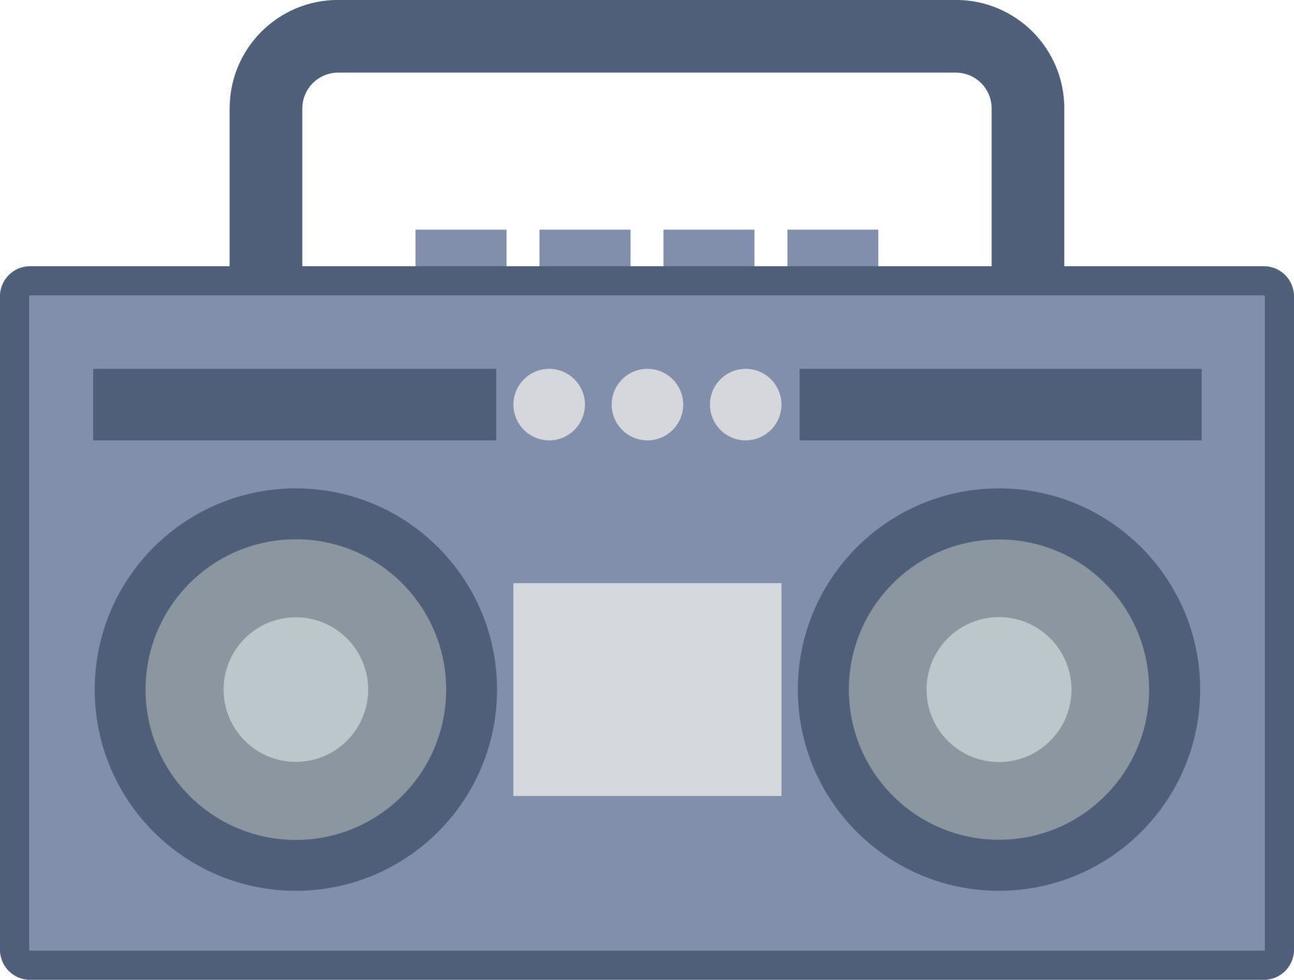 Clásico boombox radio icono con plano estilo para nostalgia diseño. gráfico recurso de antiguo estilo música audio sonido sistema. vector ilustración de electrónico dispositivo para música accesorios con retro estilo